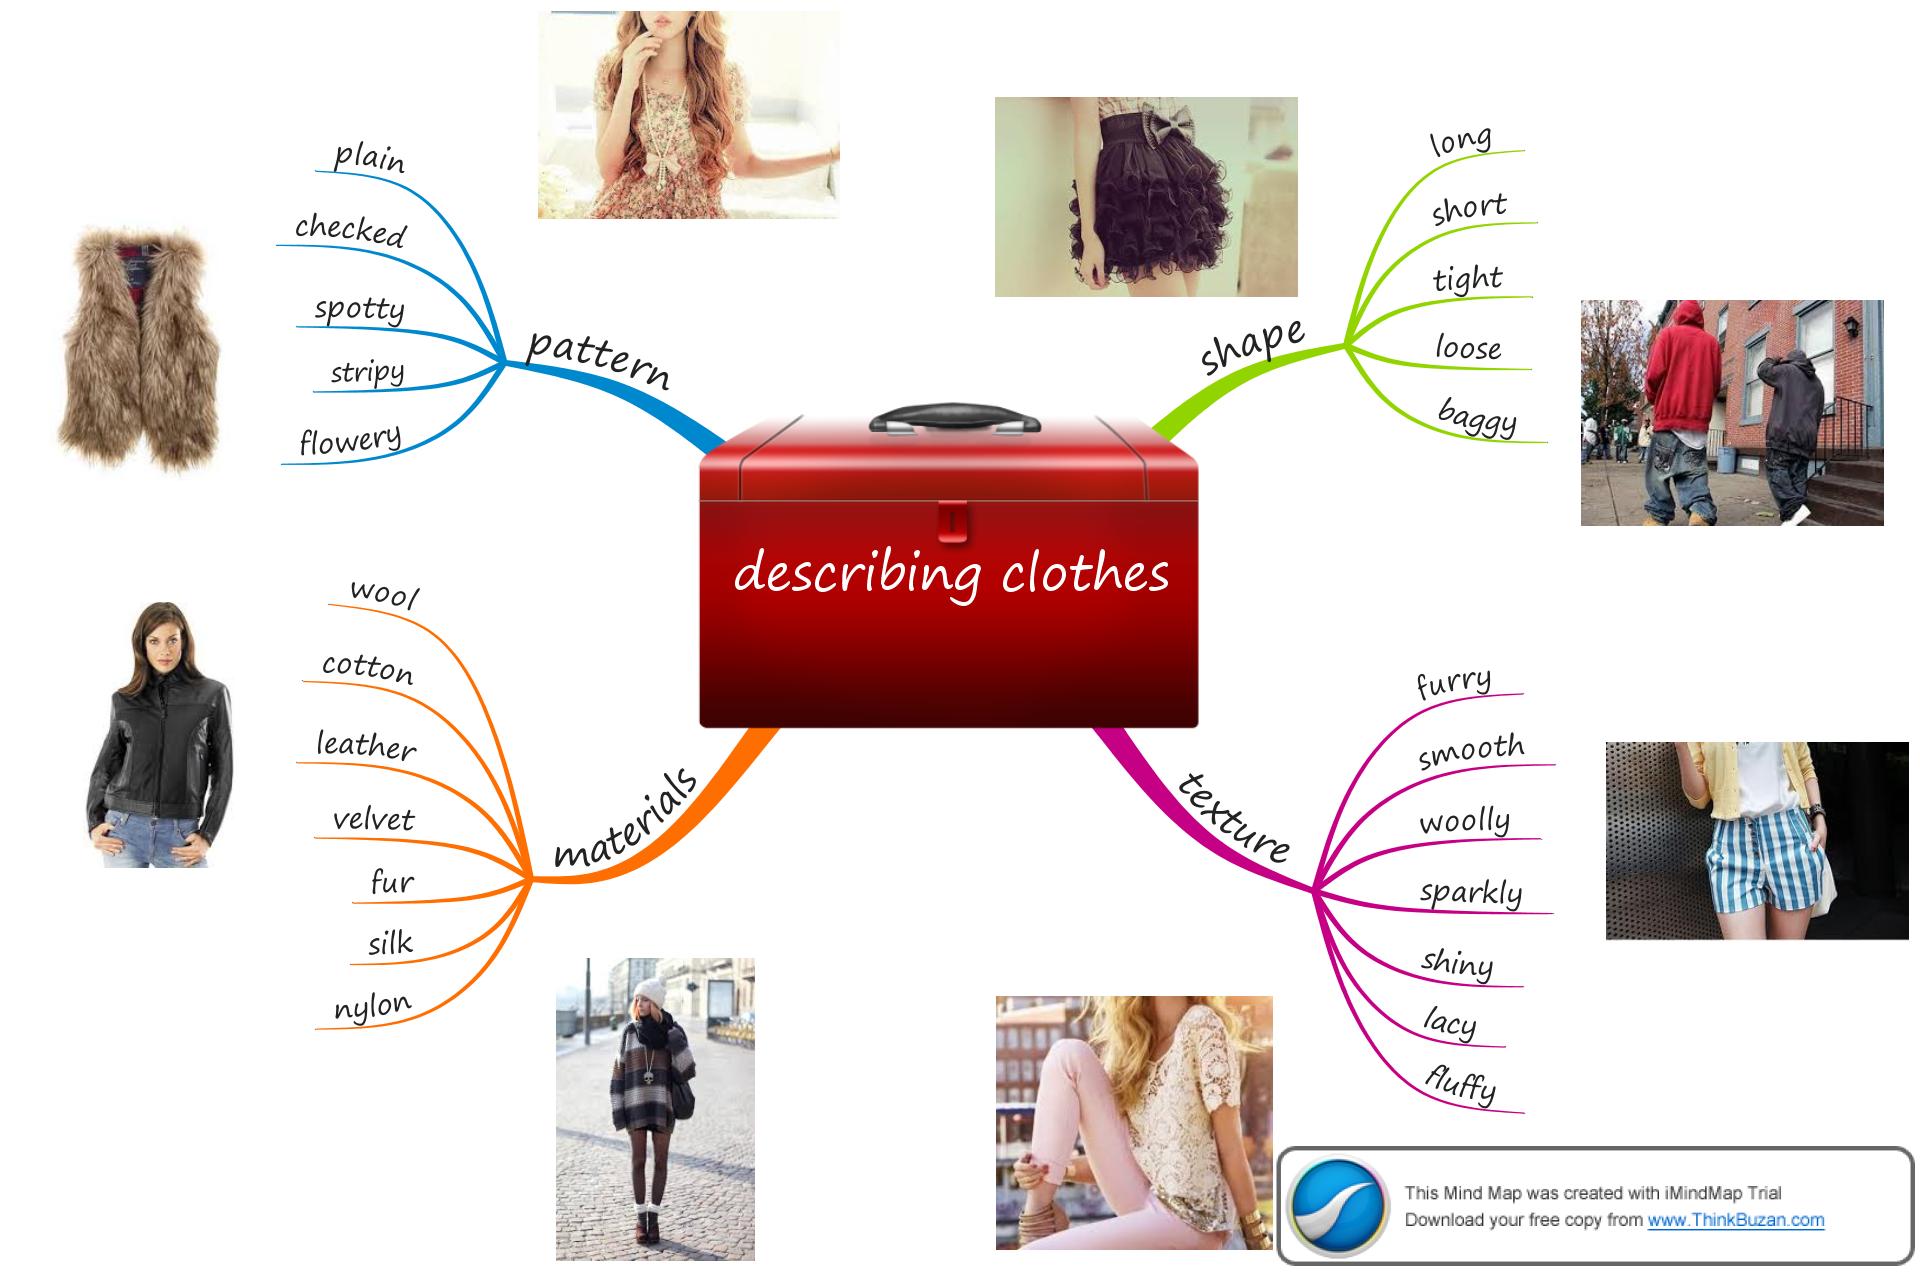 Check topic. Интеллект карта одежда. Mind Map одежда. Прилагательные describing clothes. Интеллект карта на тему одежда.